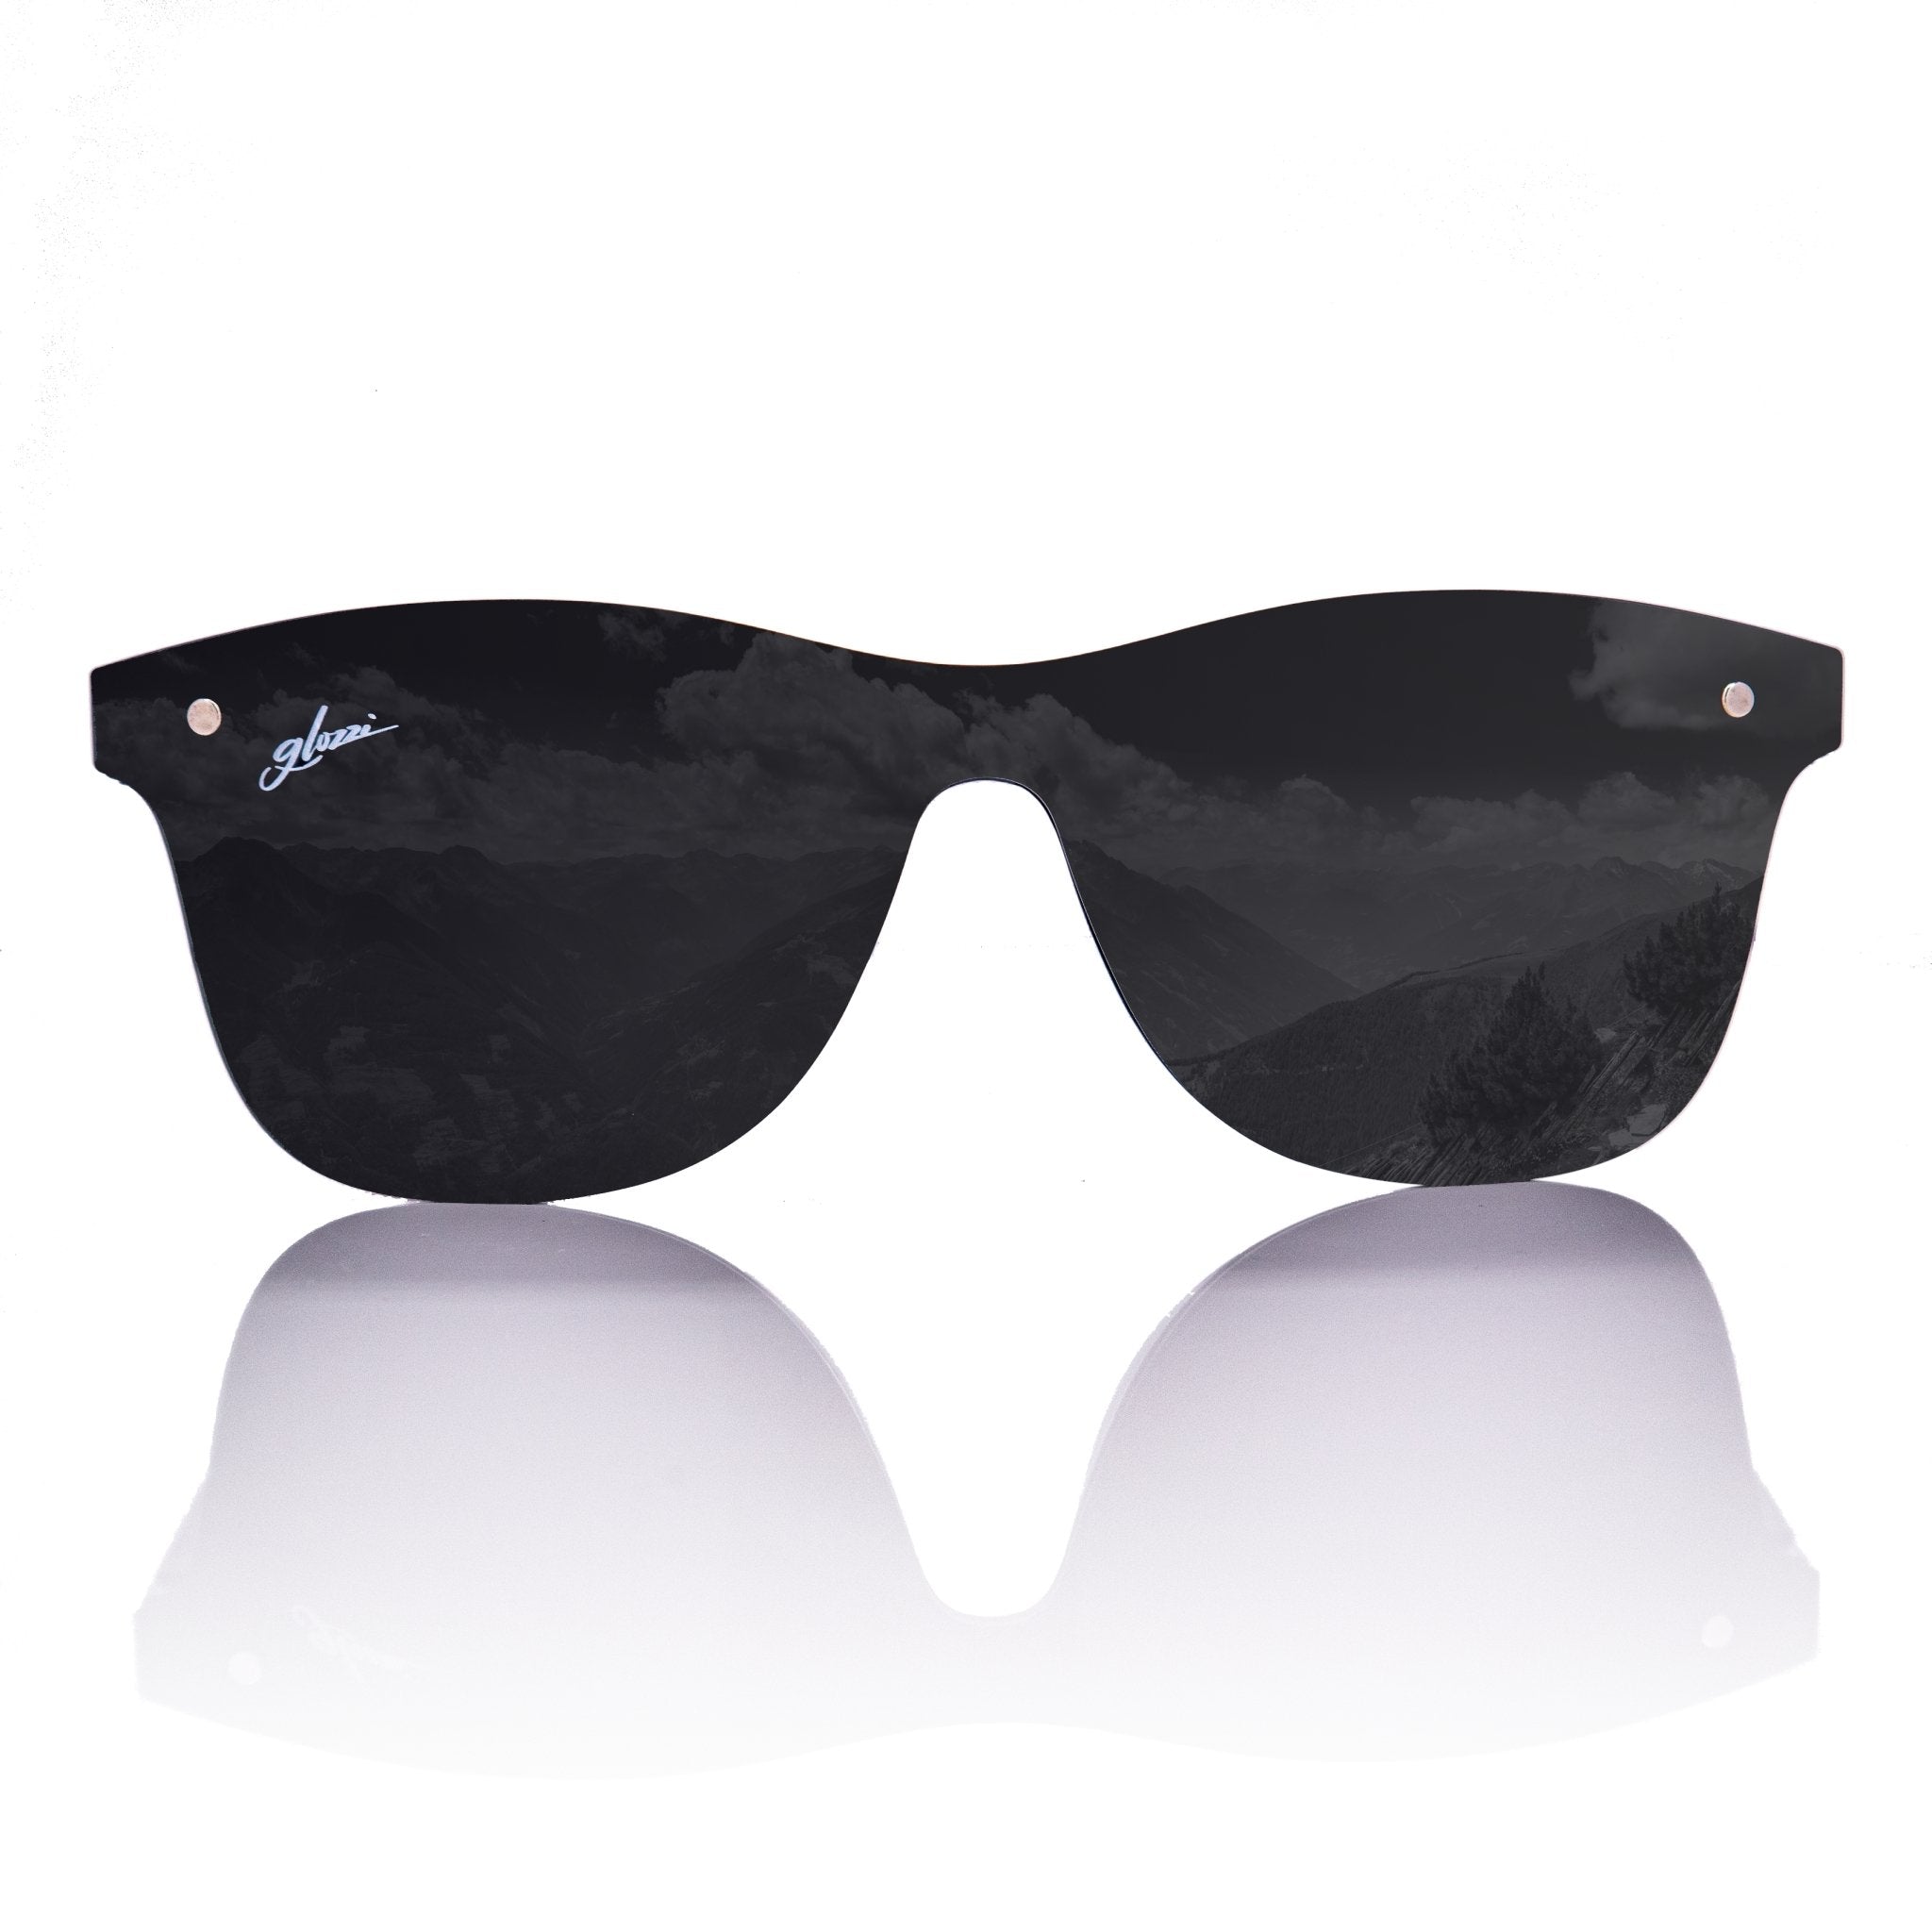 Sonnenbrille John » Eichenholz/Schwarz